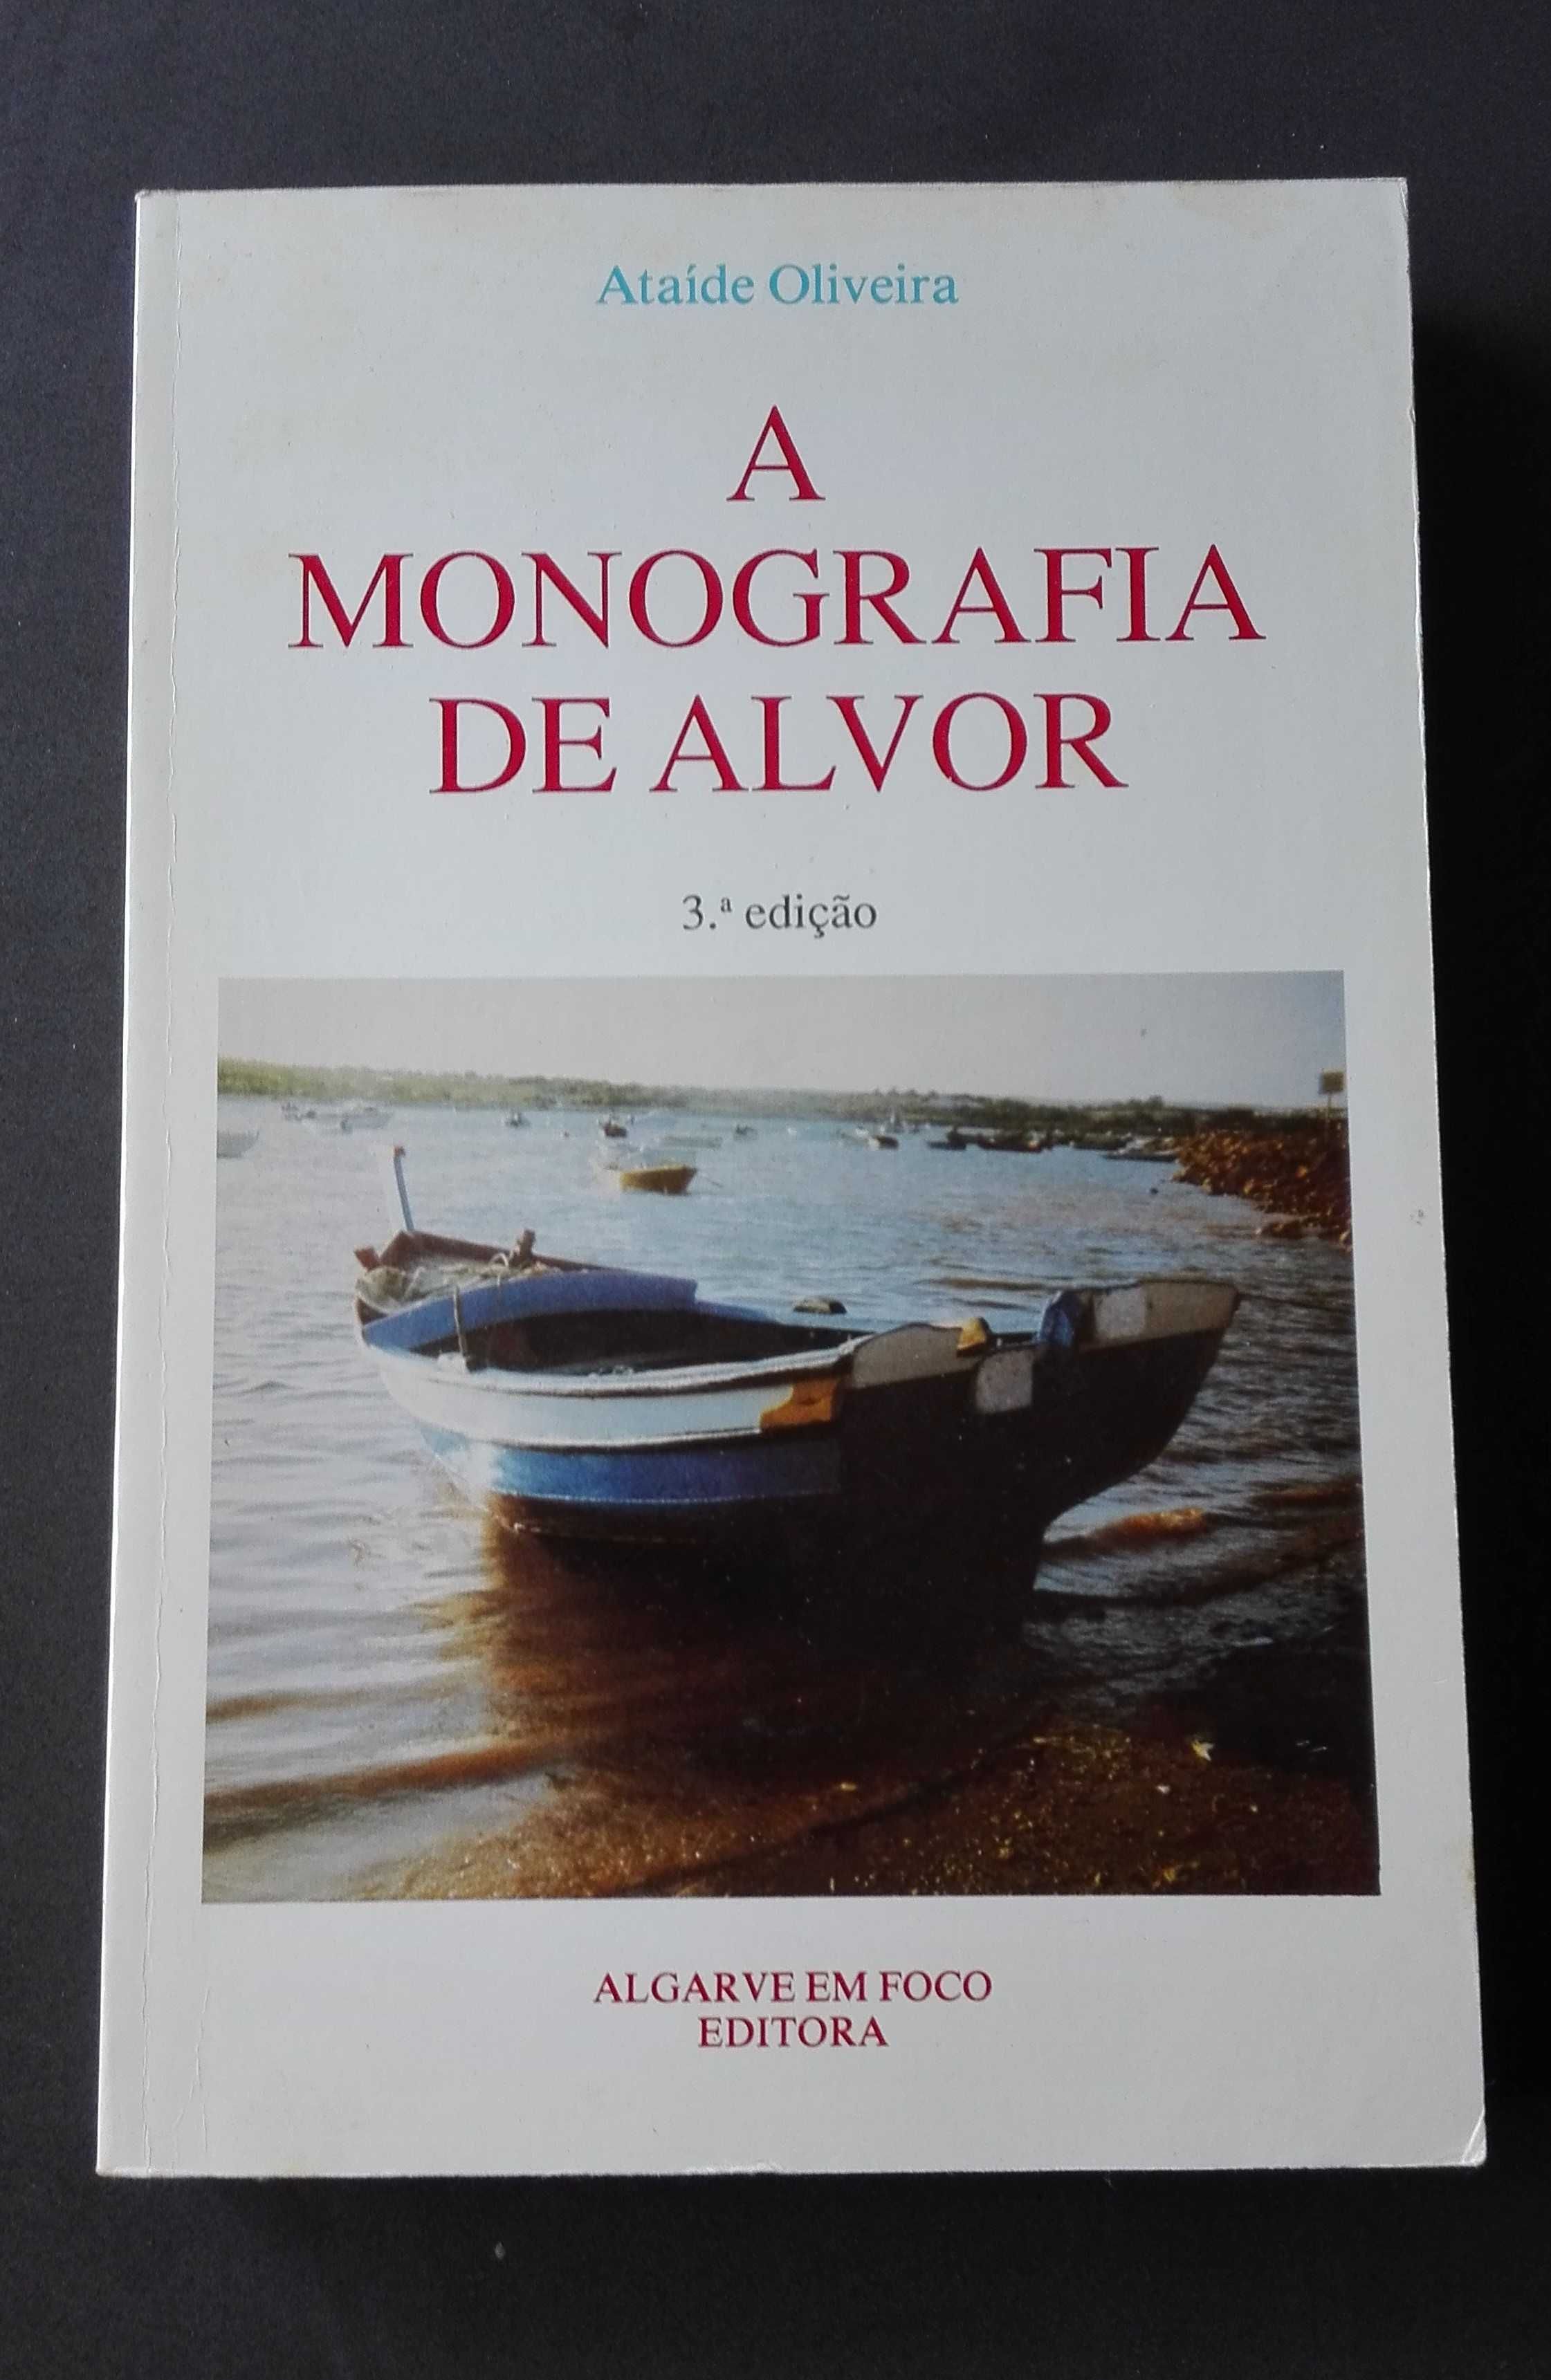 A Monografia de Alvor